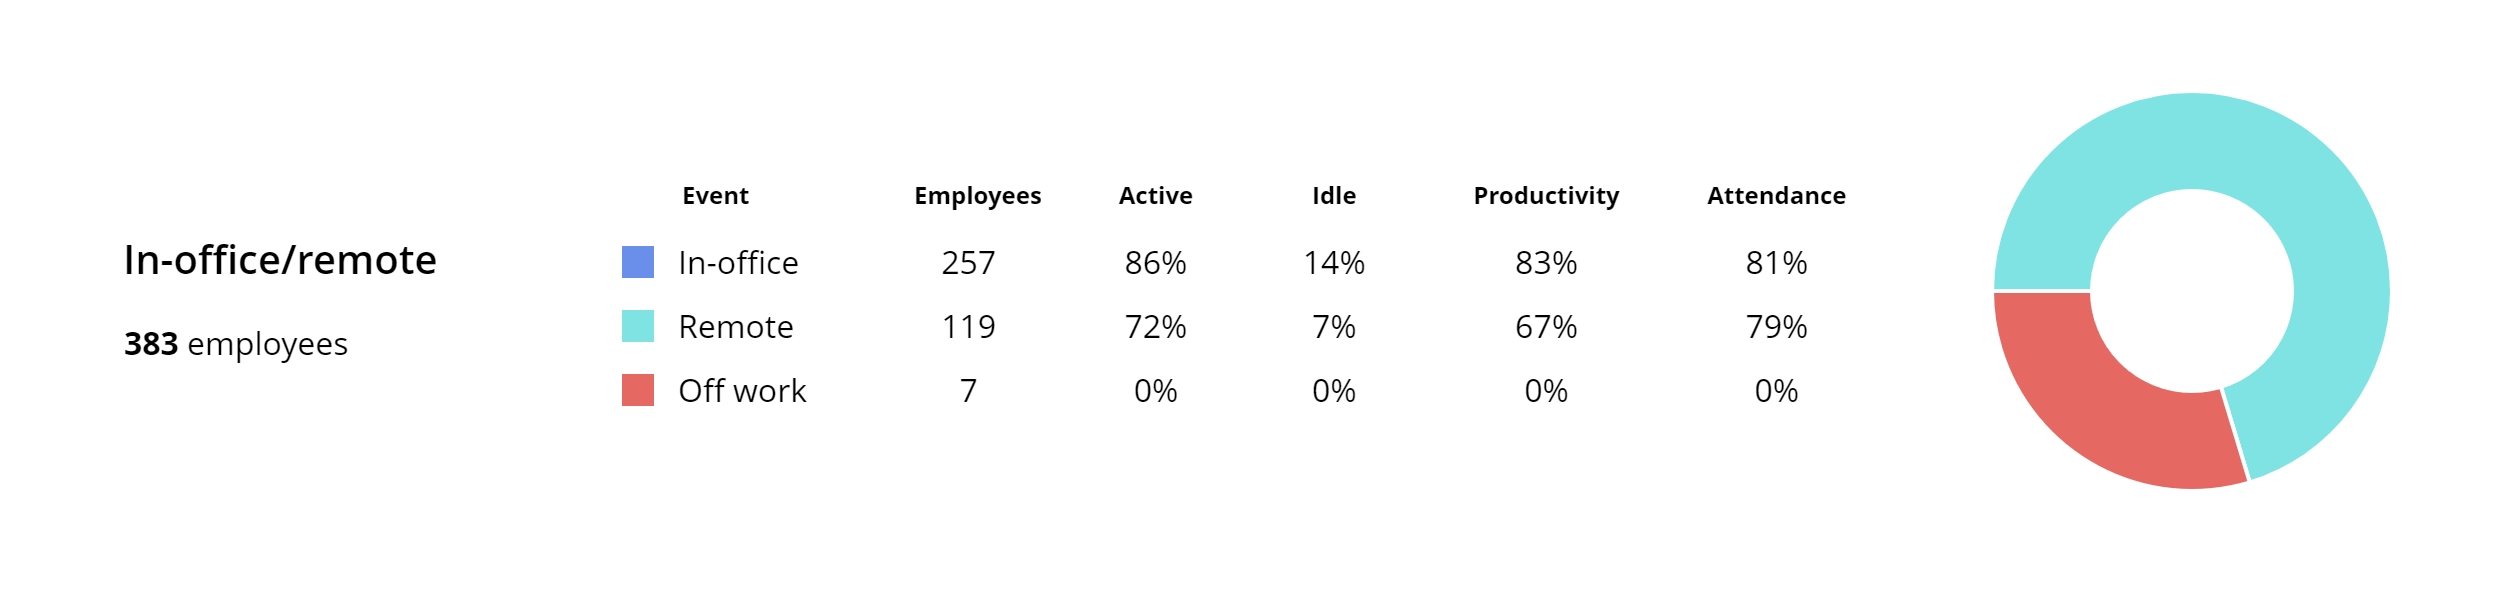 WorkTime monitor employee performance KPIs